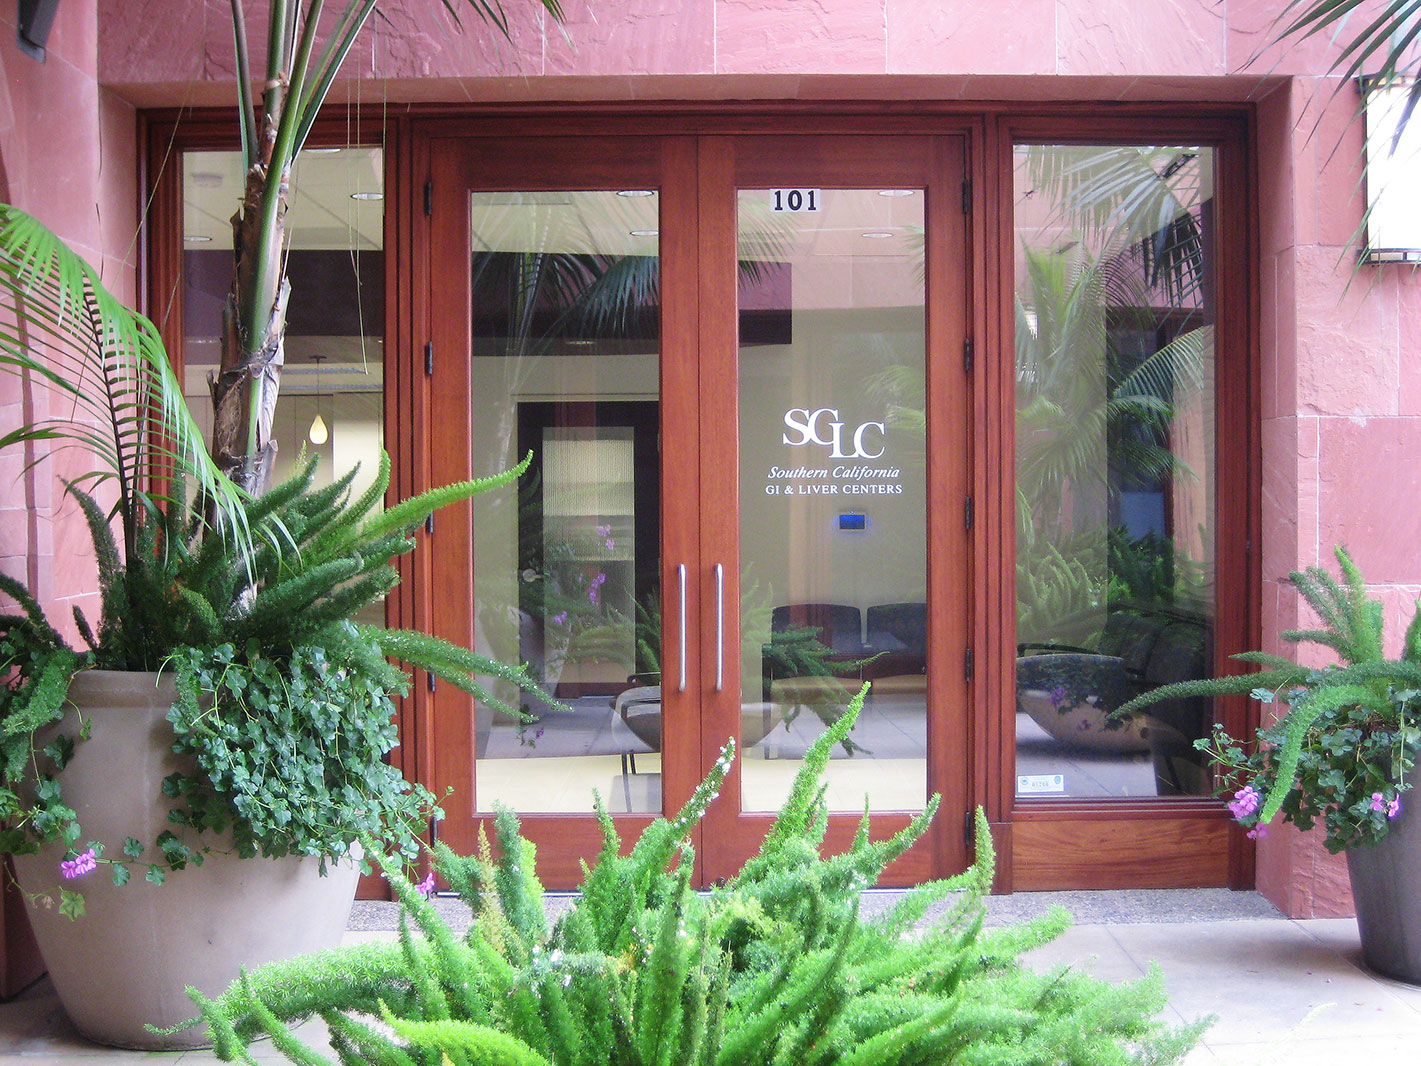 Southern California Liver Center entrance